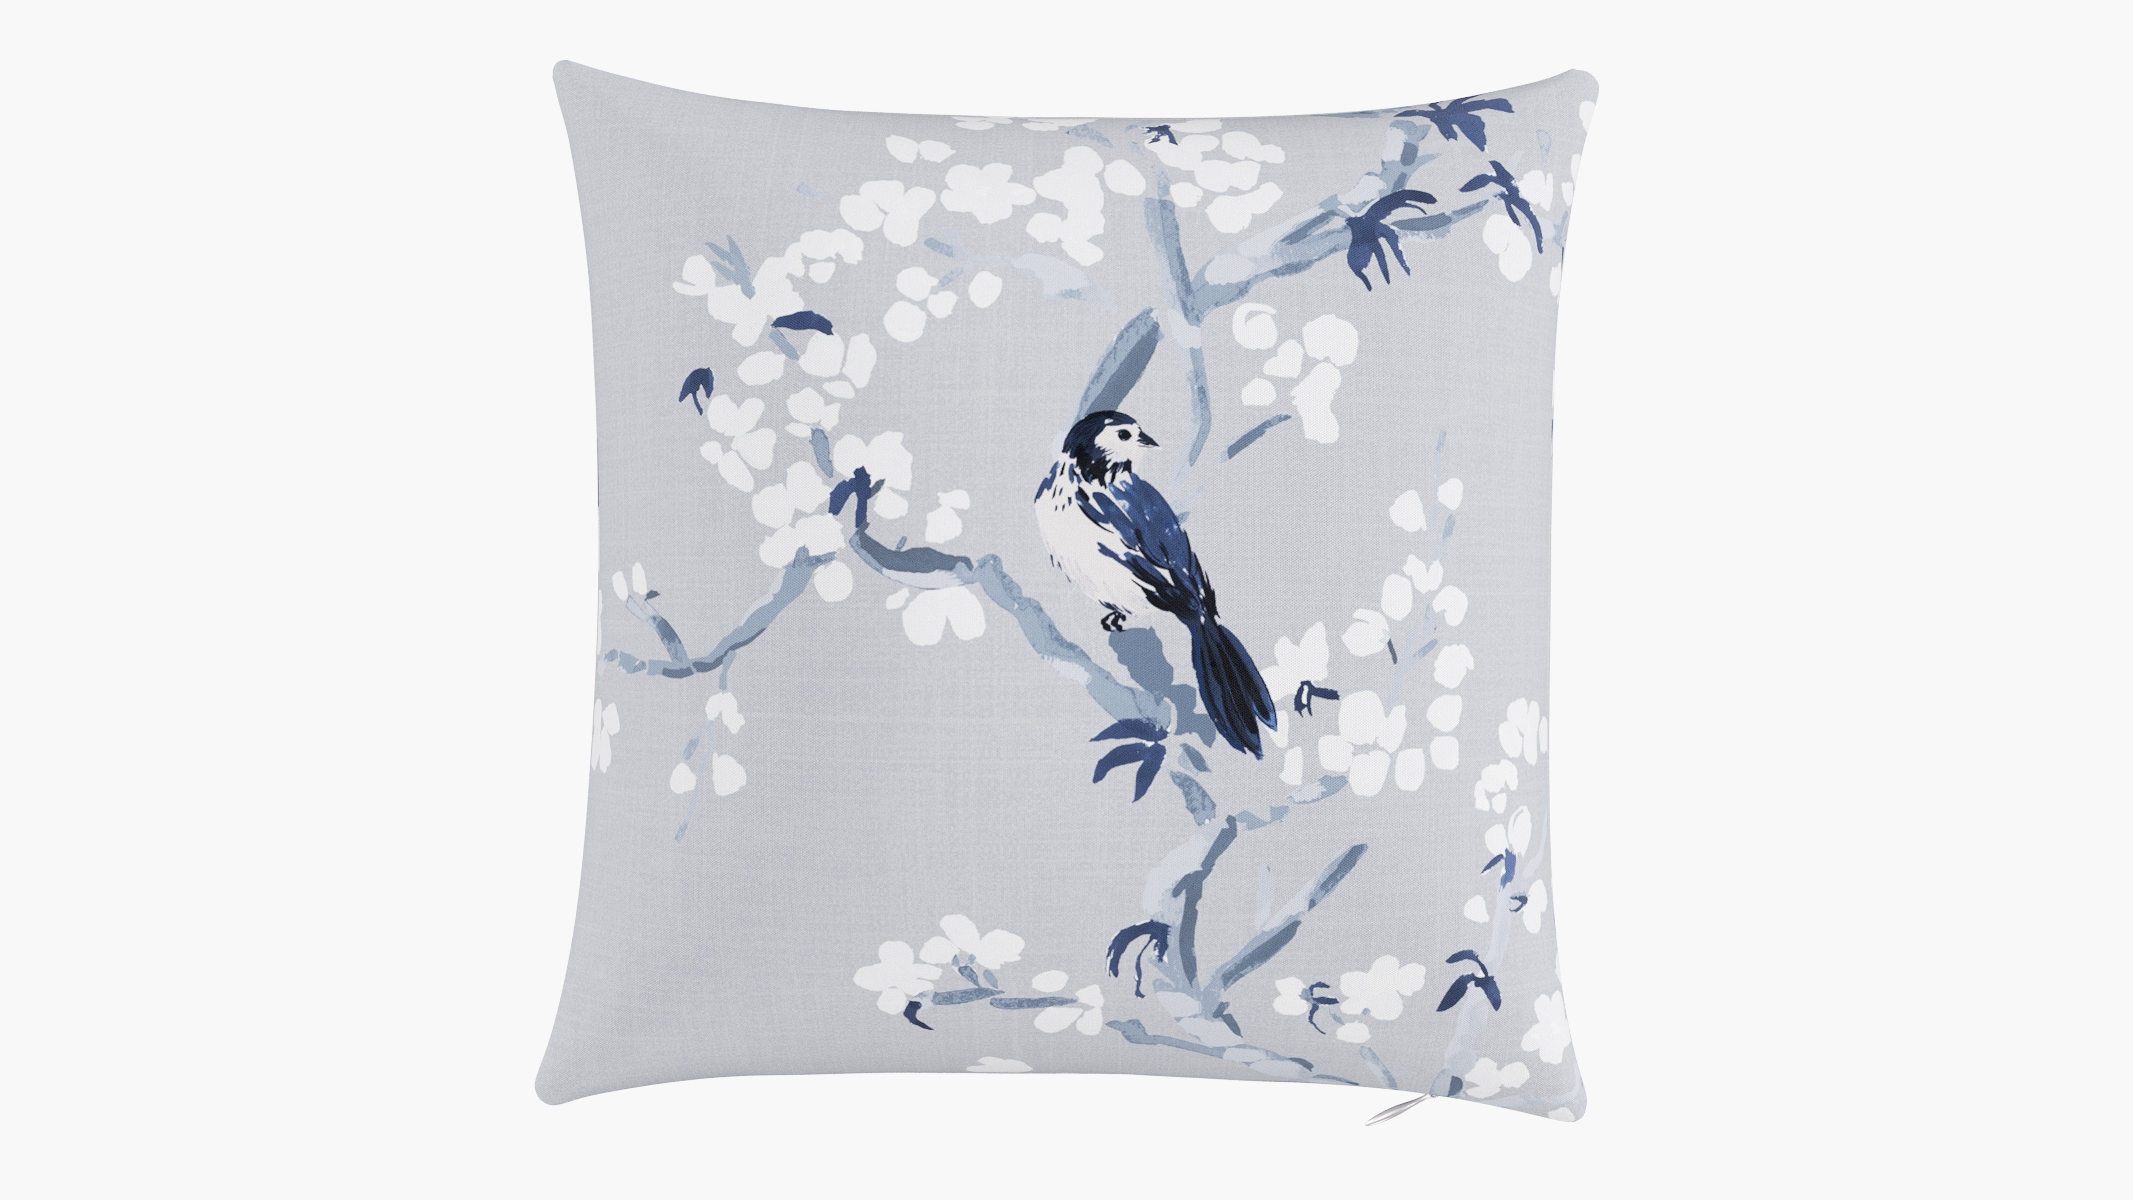 Throw Pillow, Blue Cherry Blossom, 16" x 16" - Image 0